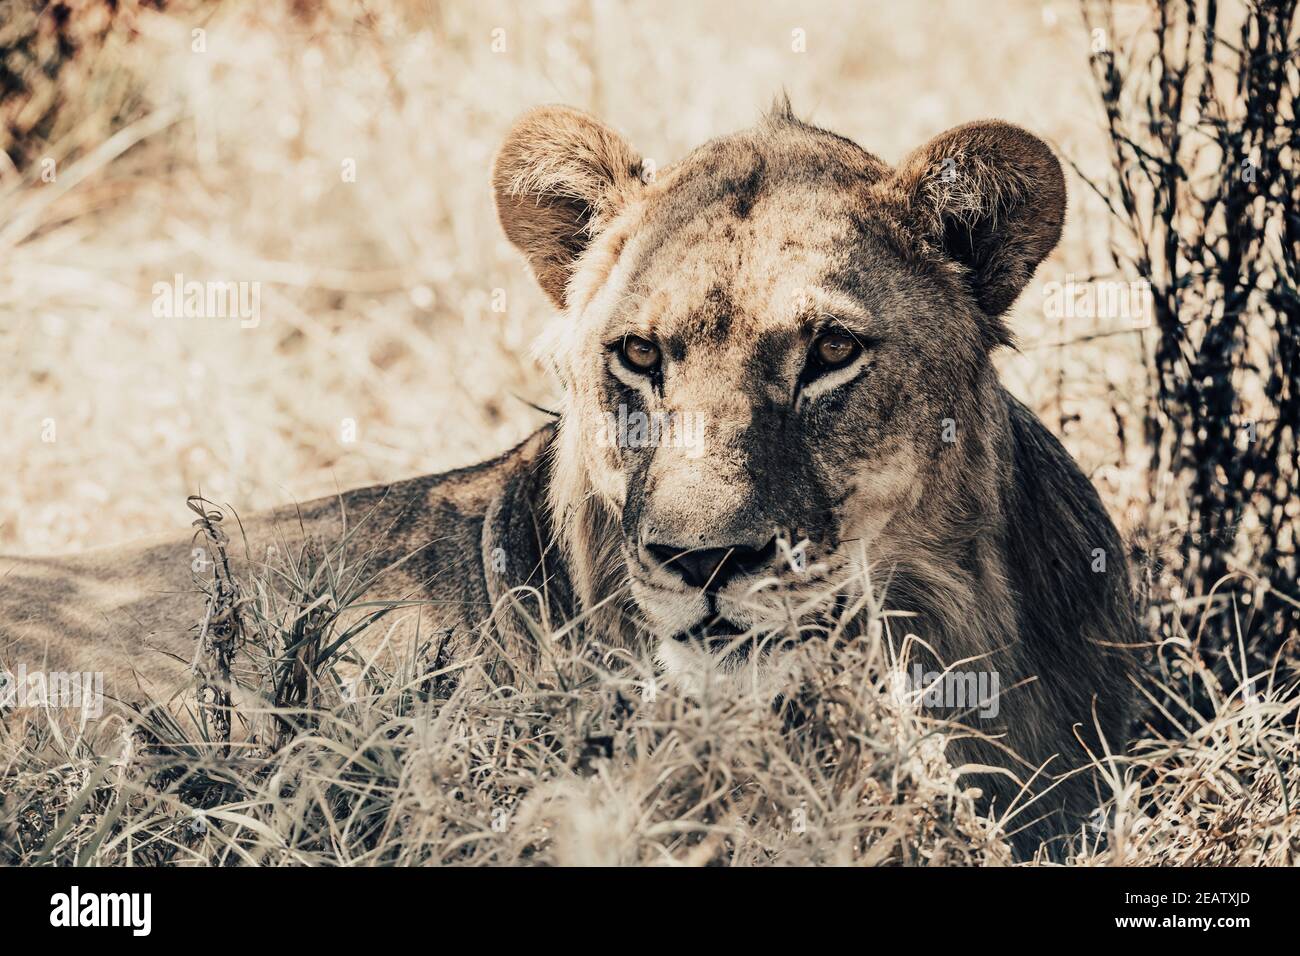 lion femelle dans Botswana Afrique safari faune Banque D'Images